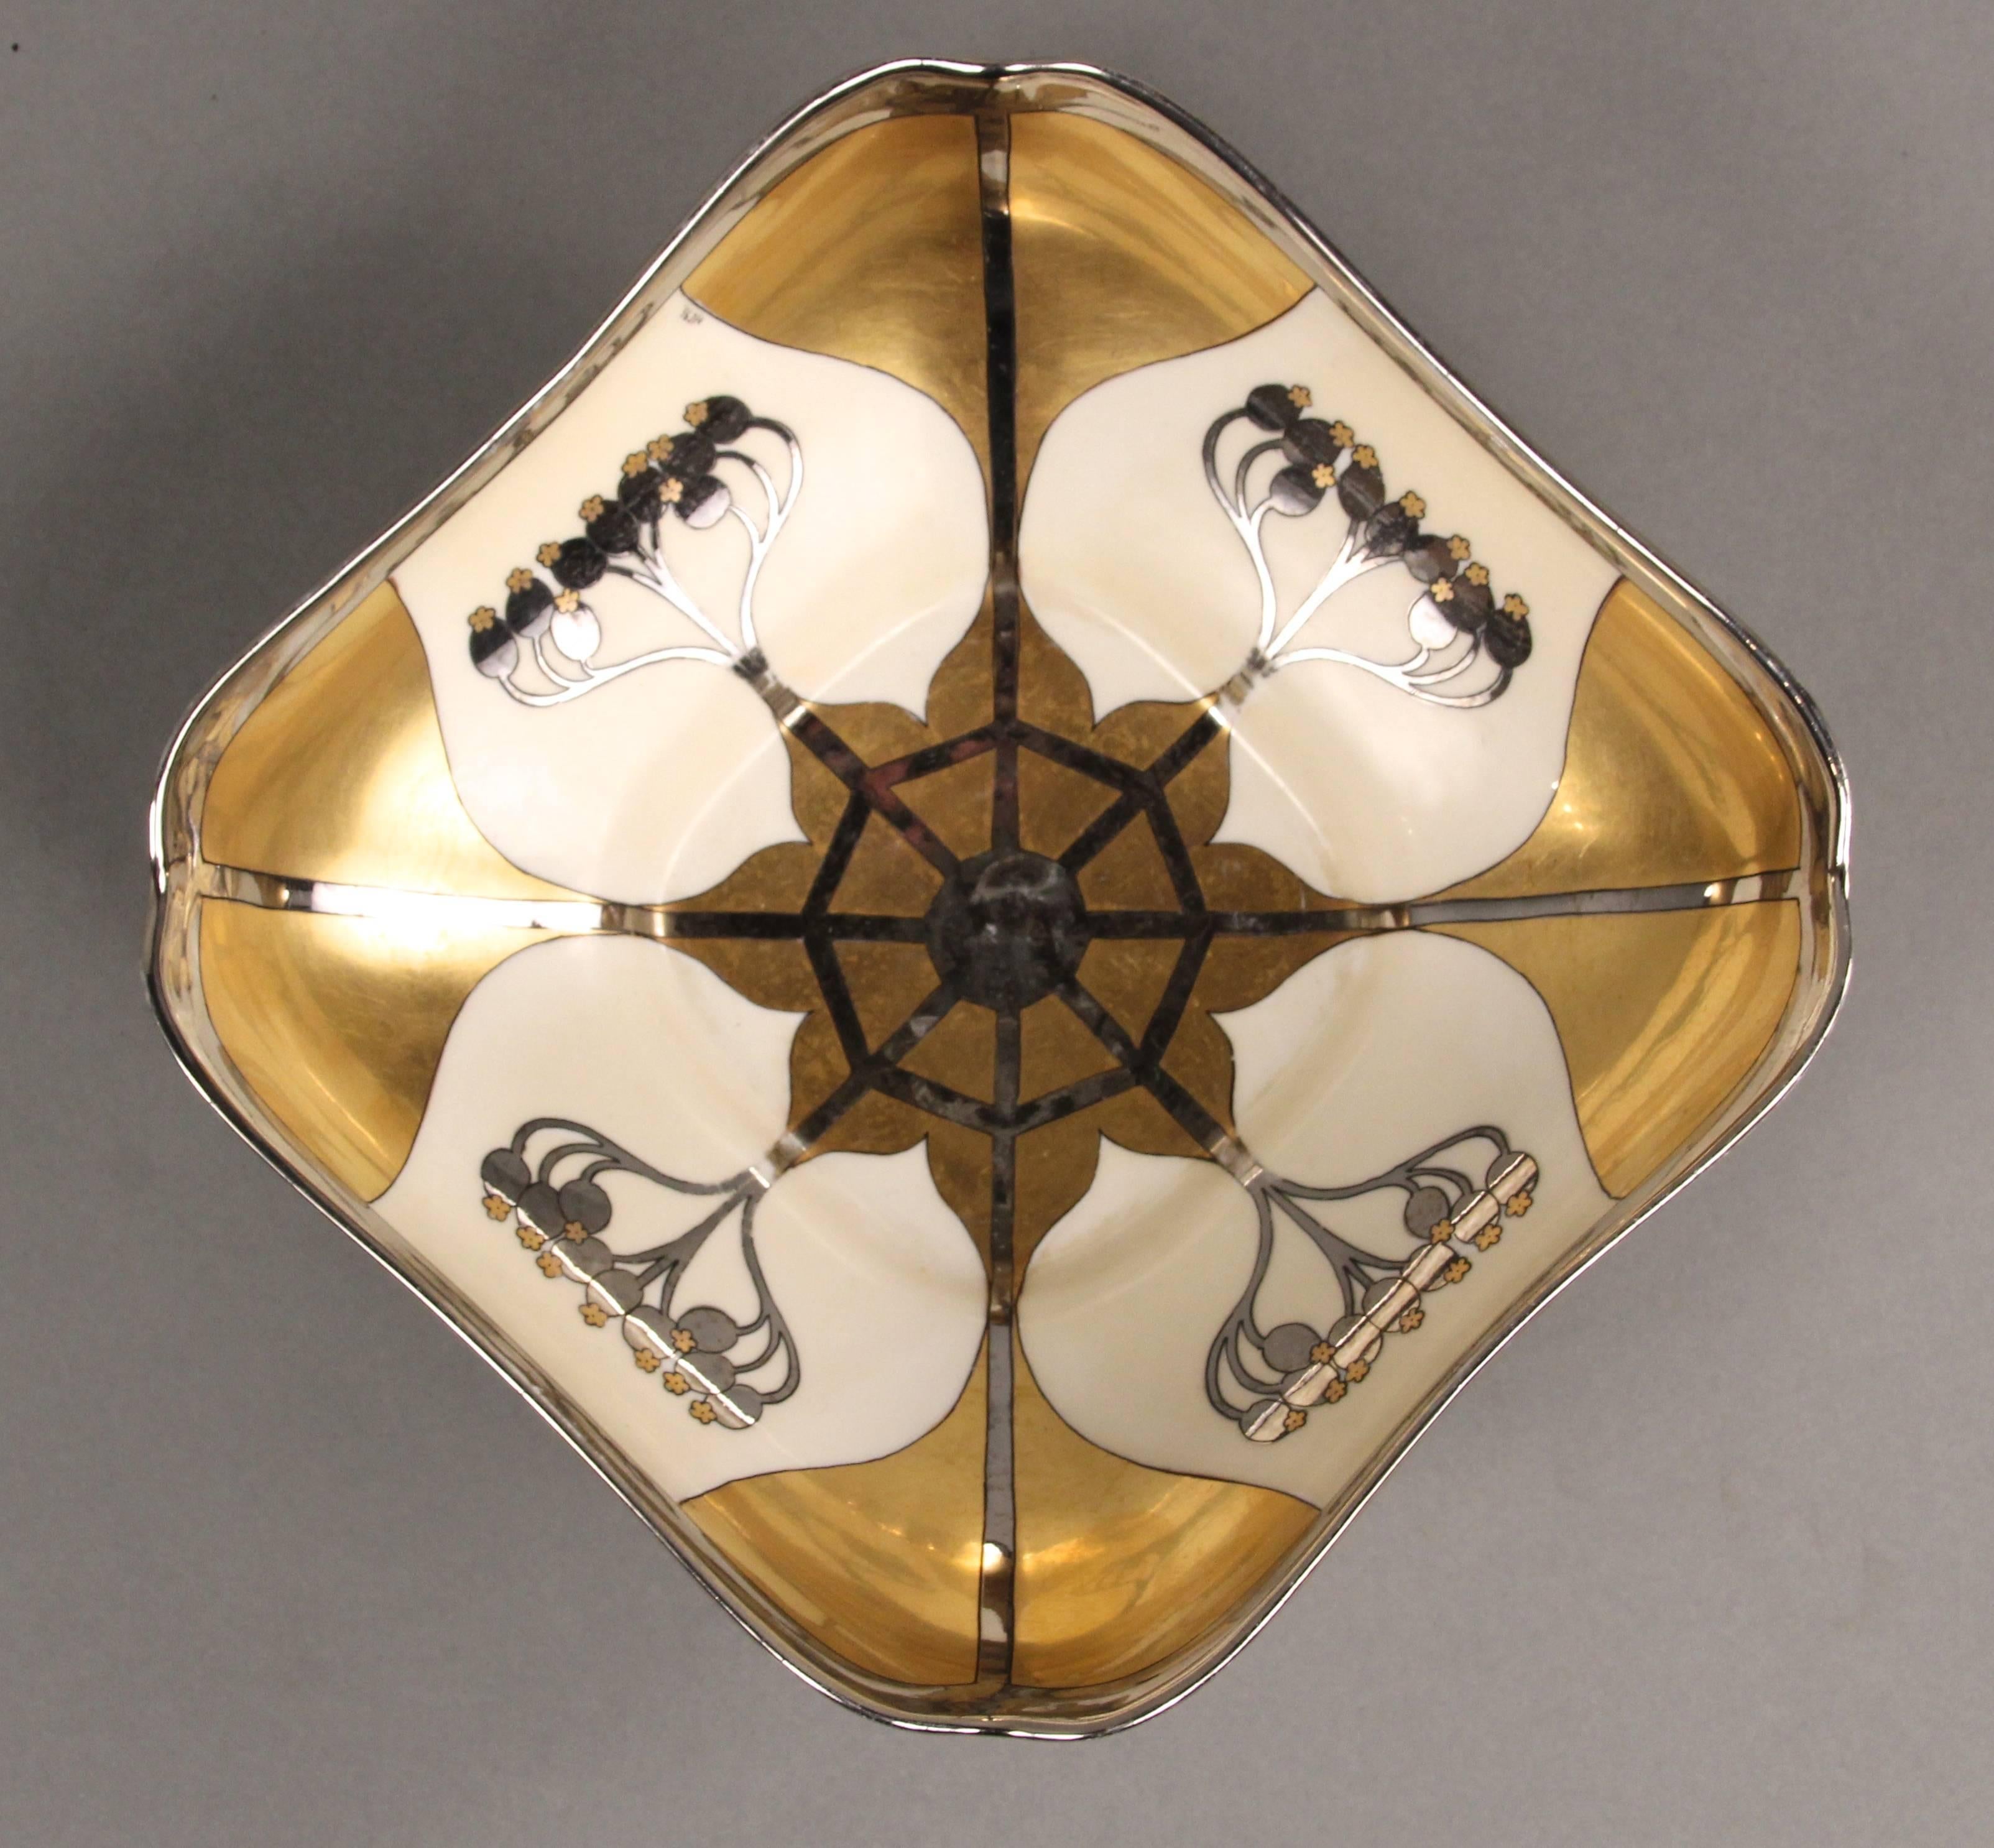 Art Nouveau bowl with floral design marked Pickard Bavaria. Signed by Robert Hessler.